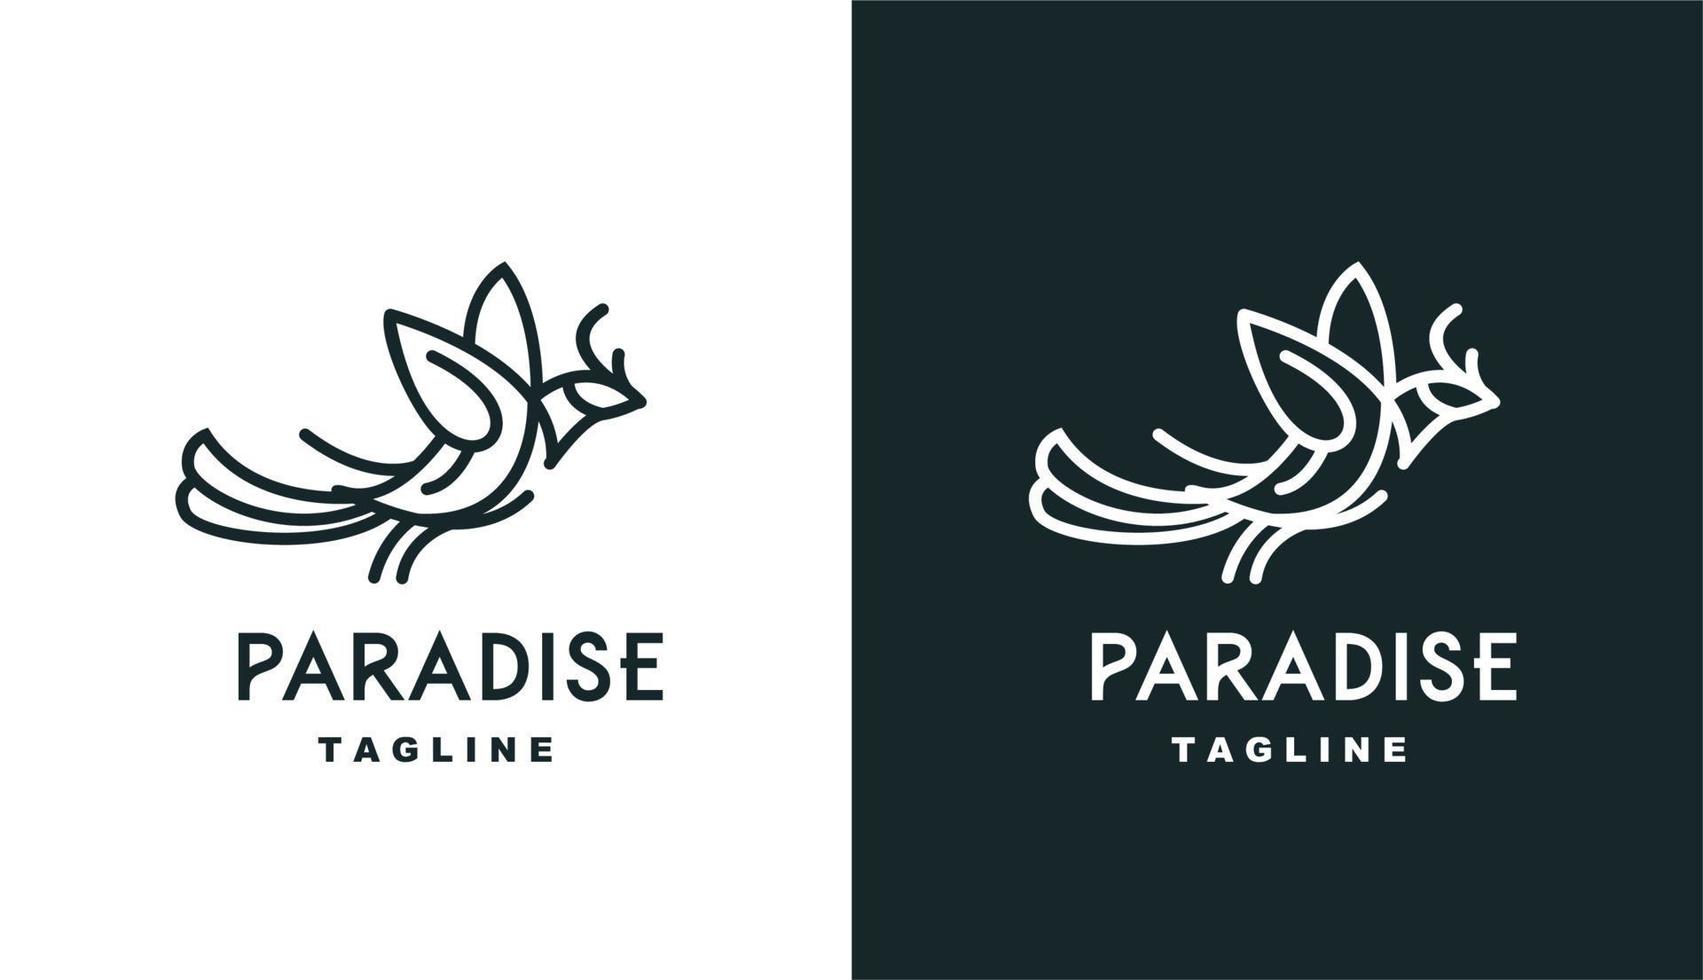 Vektor Vogelparadies Monoline einfaches Logo perfekt für jede Marke und jedes Unternehmen